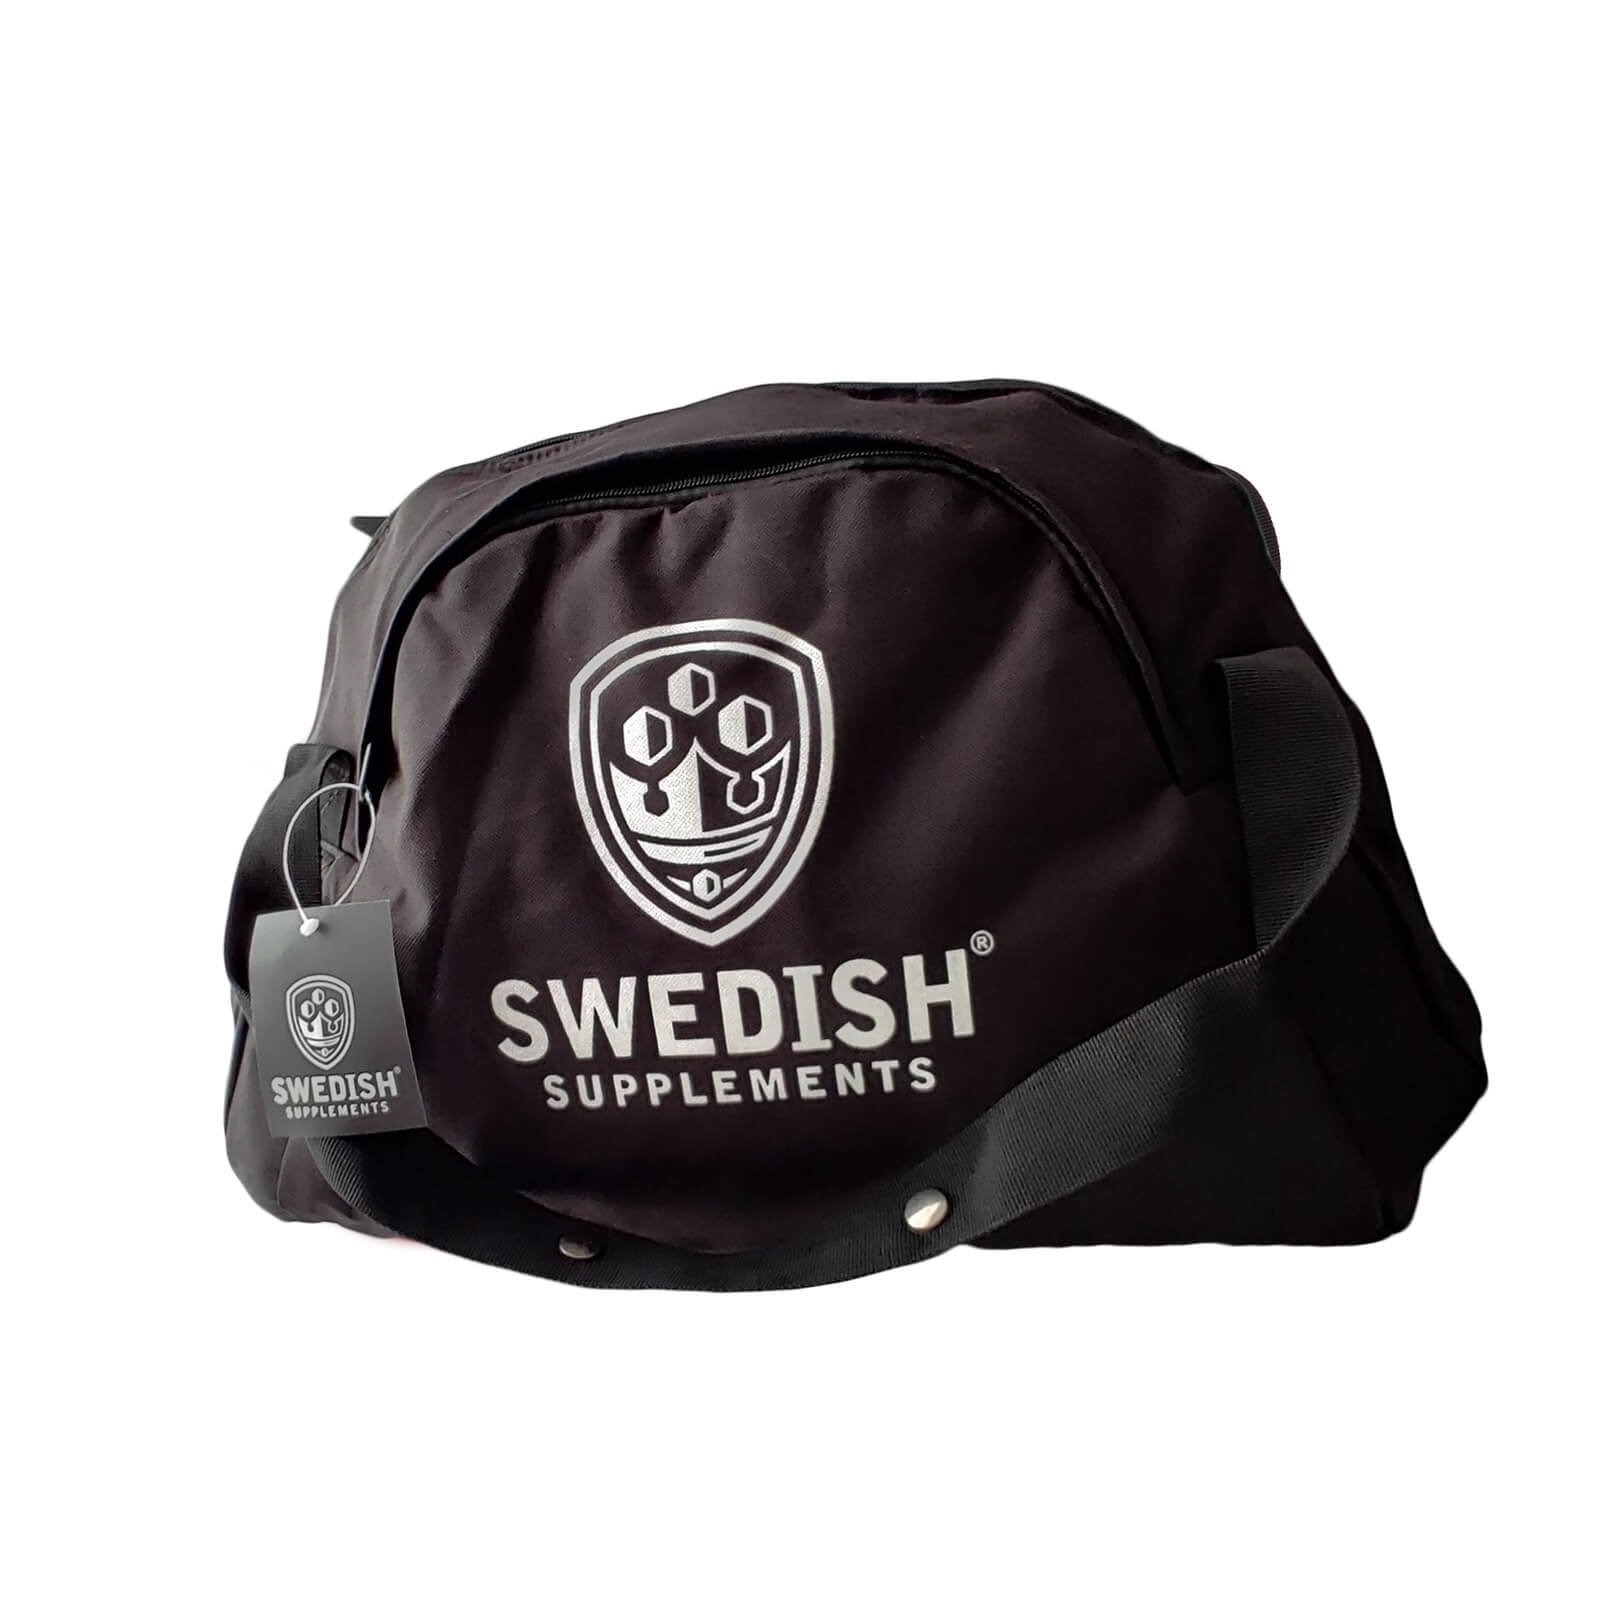 Kolla in Ladies Gym Bag, black, Swedish Supplements hos SportGymButiken.se